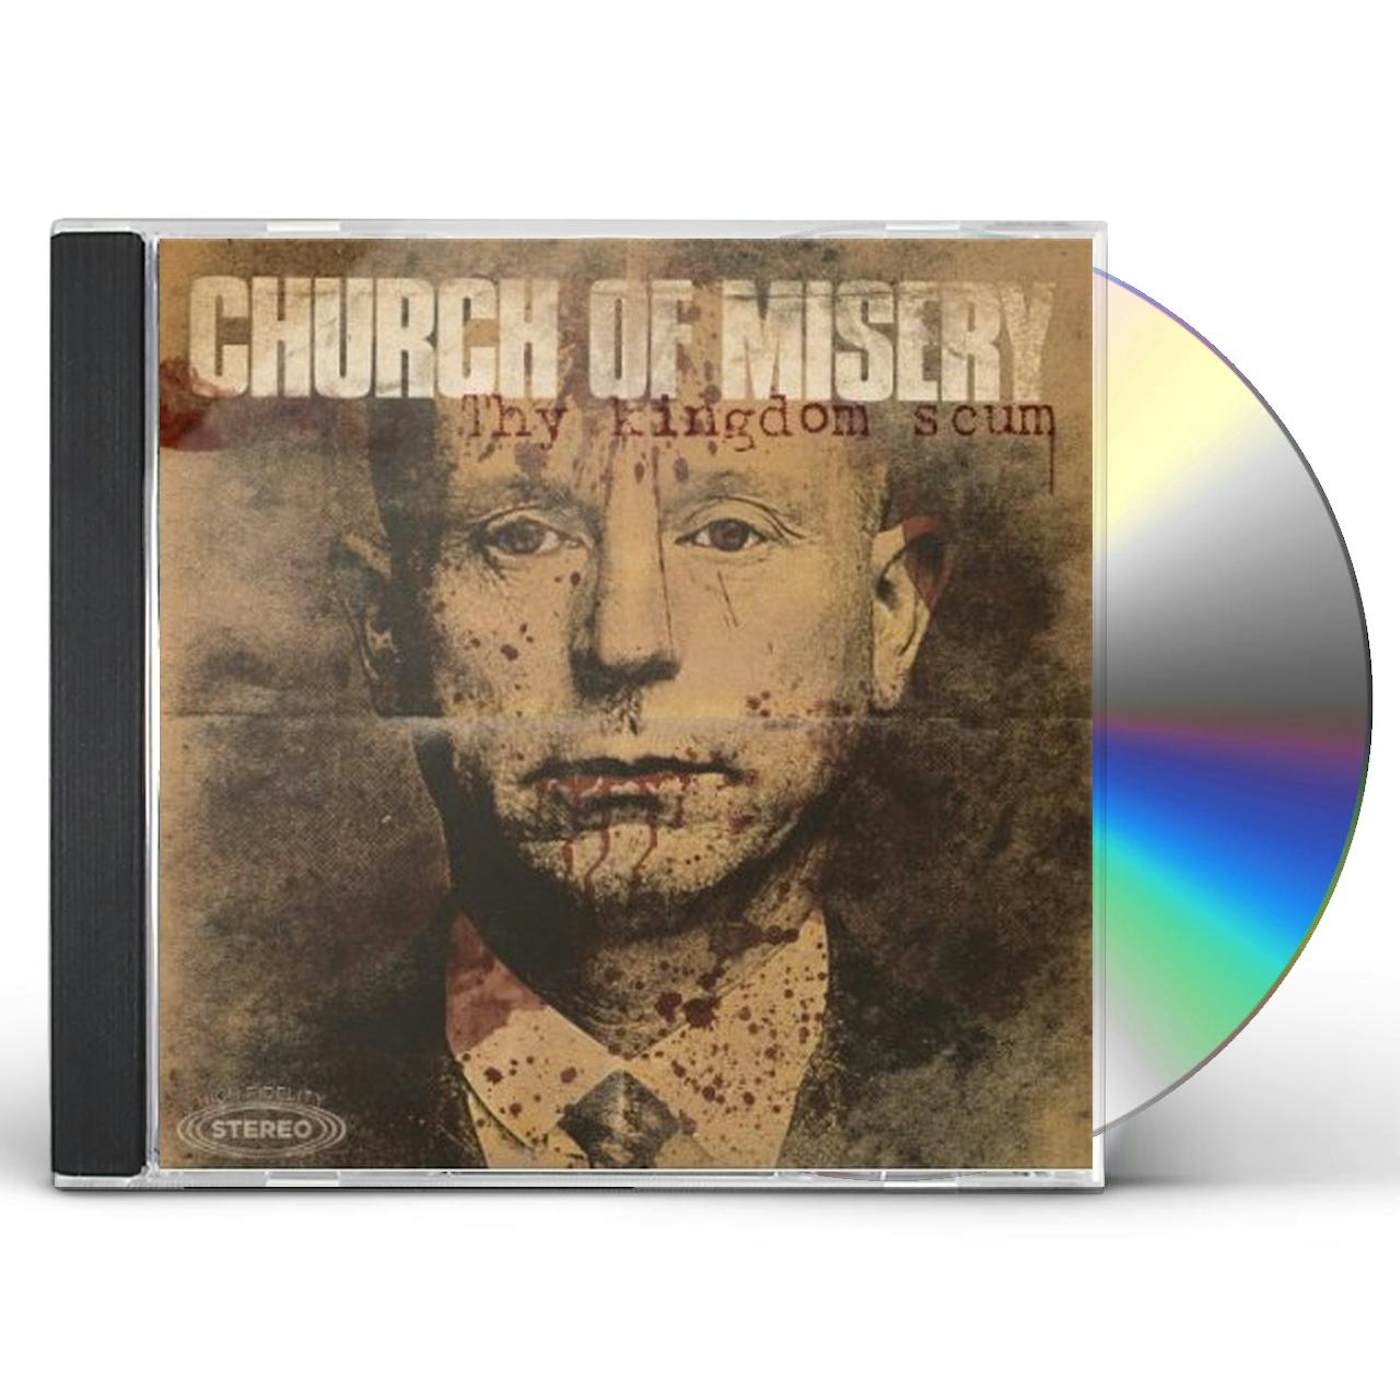 Church Of Misery THY KINGDOM SCUM CD